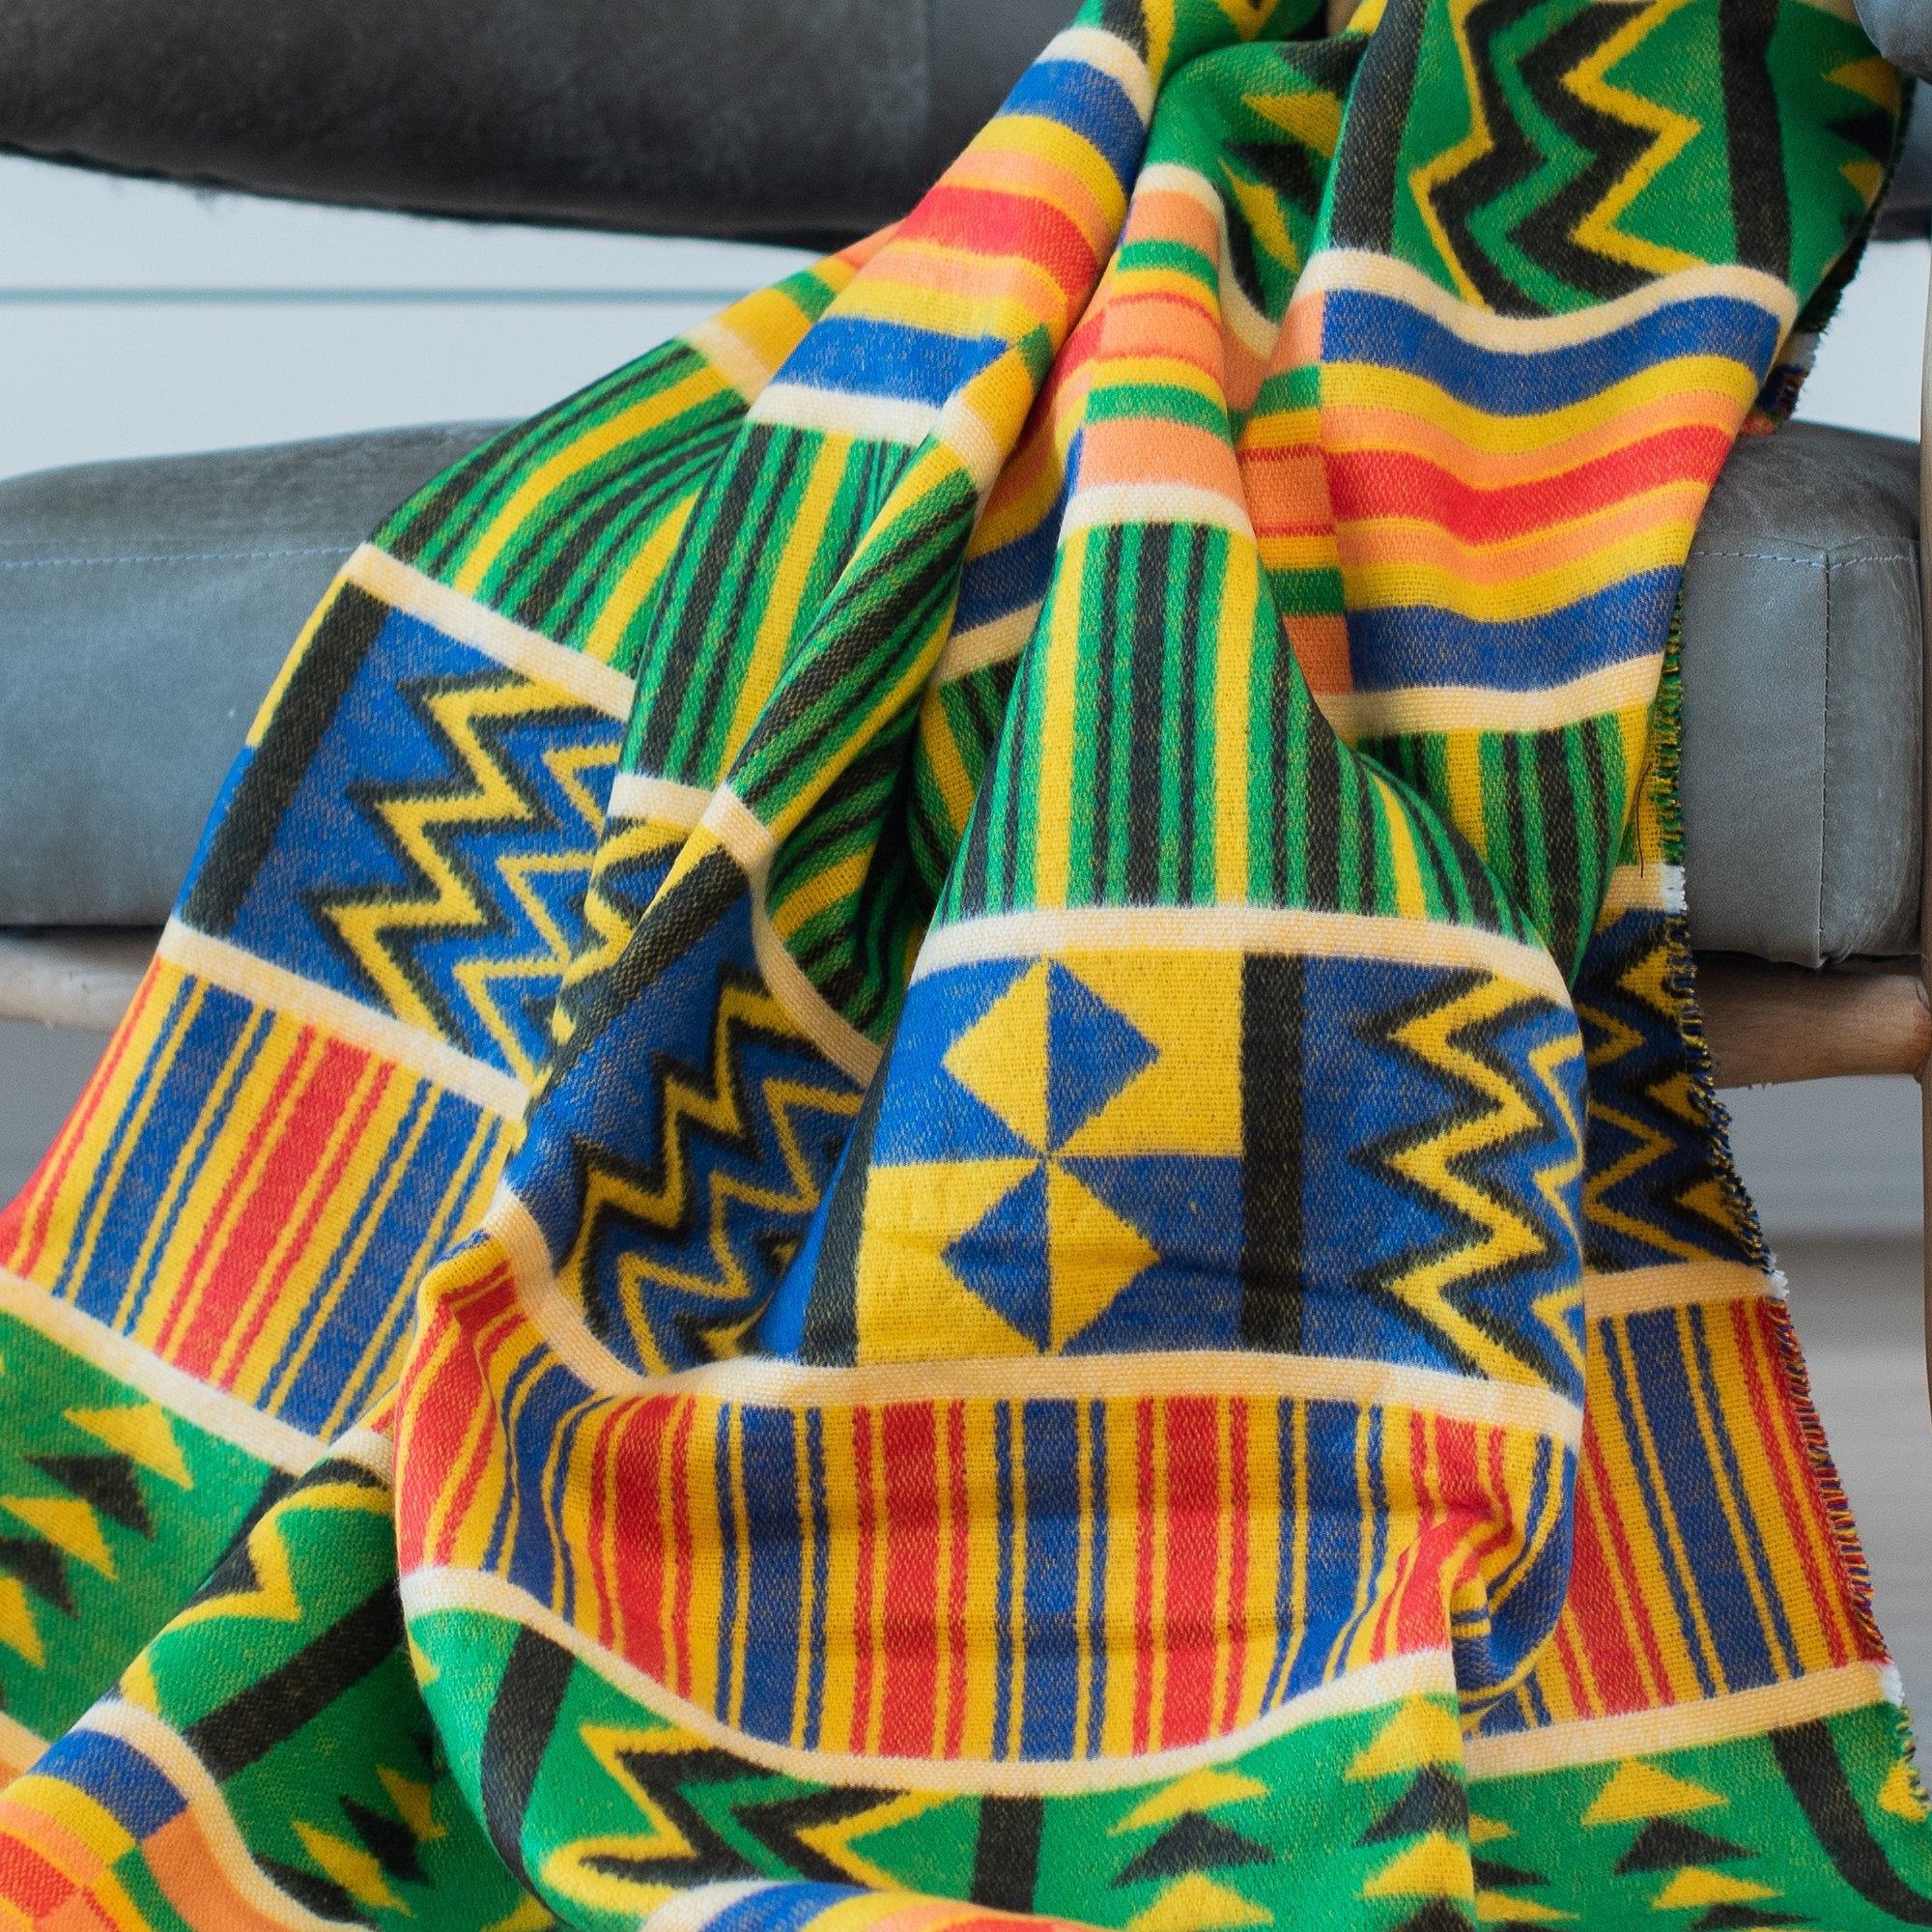 Couverture africaine douillette - Ghana - 180 x 140 cm